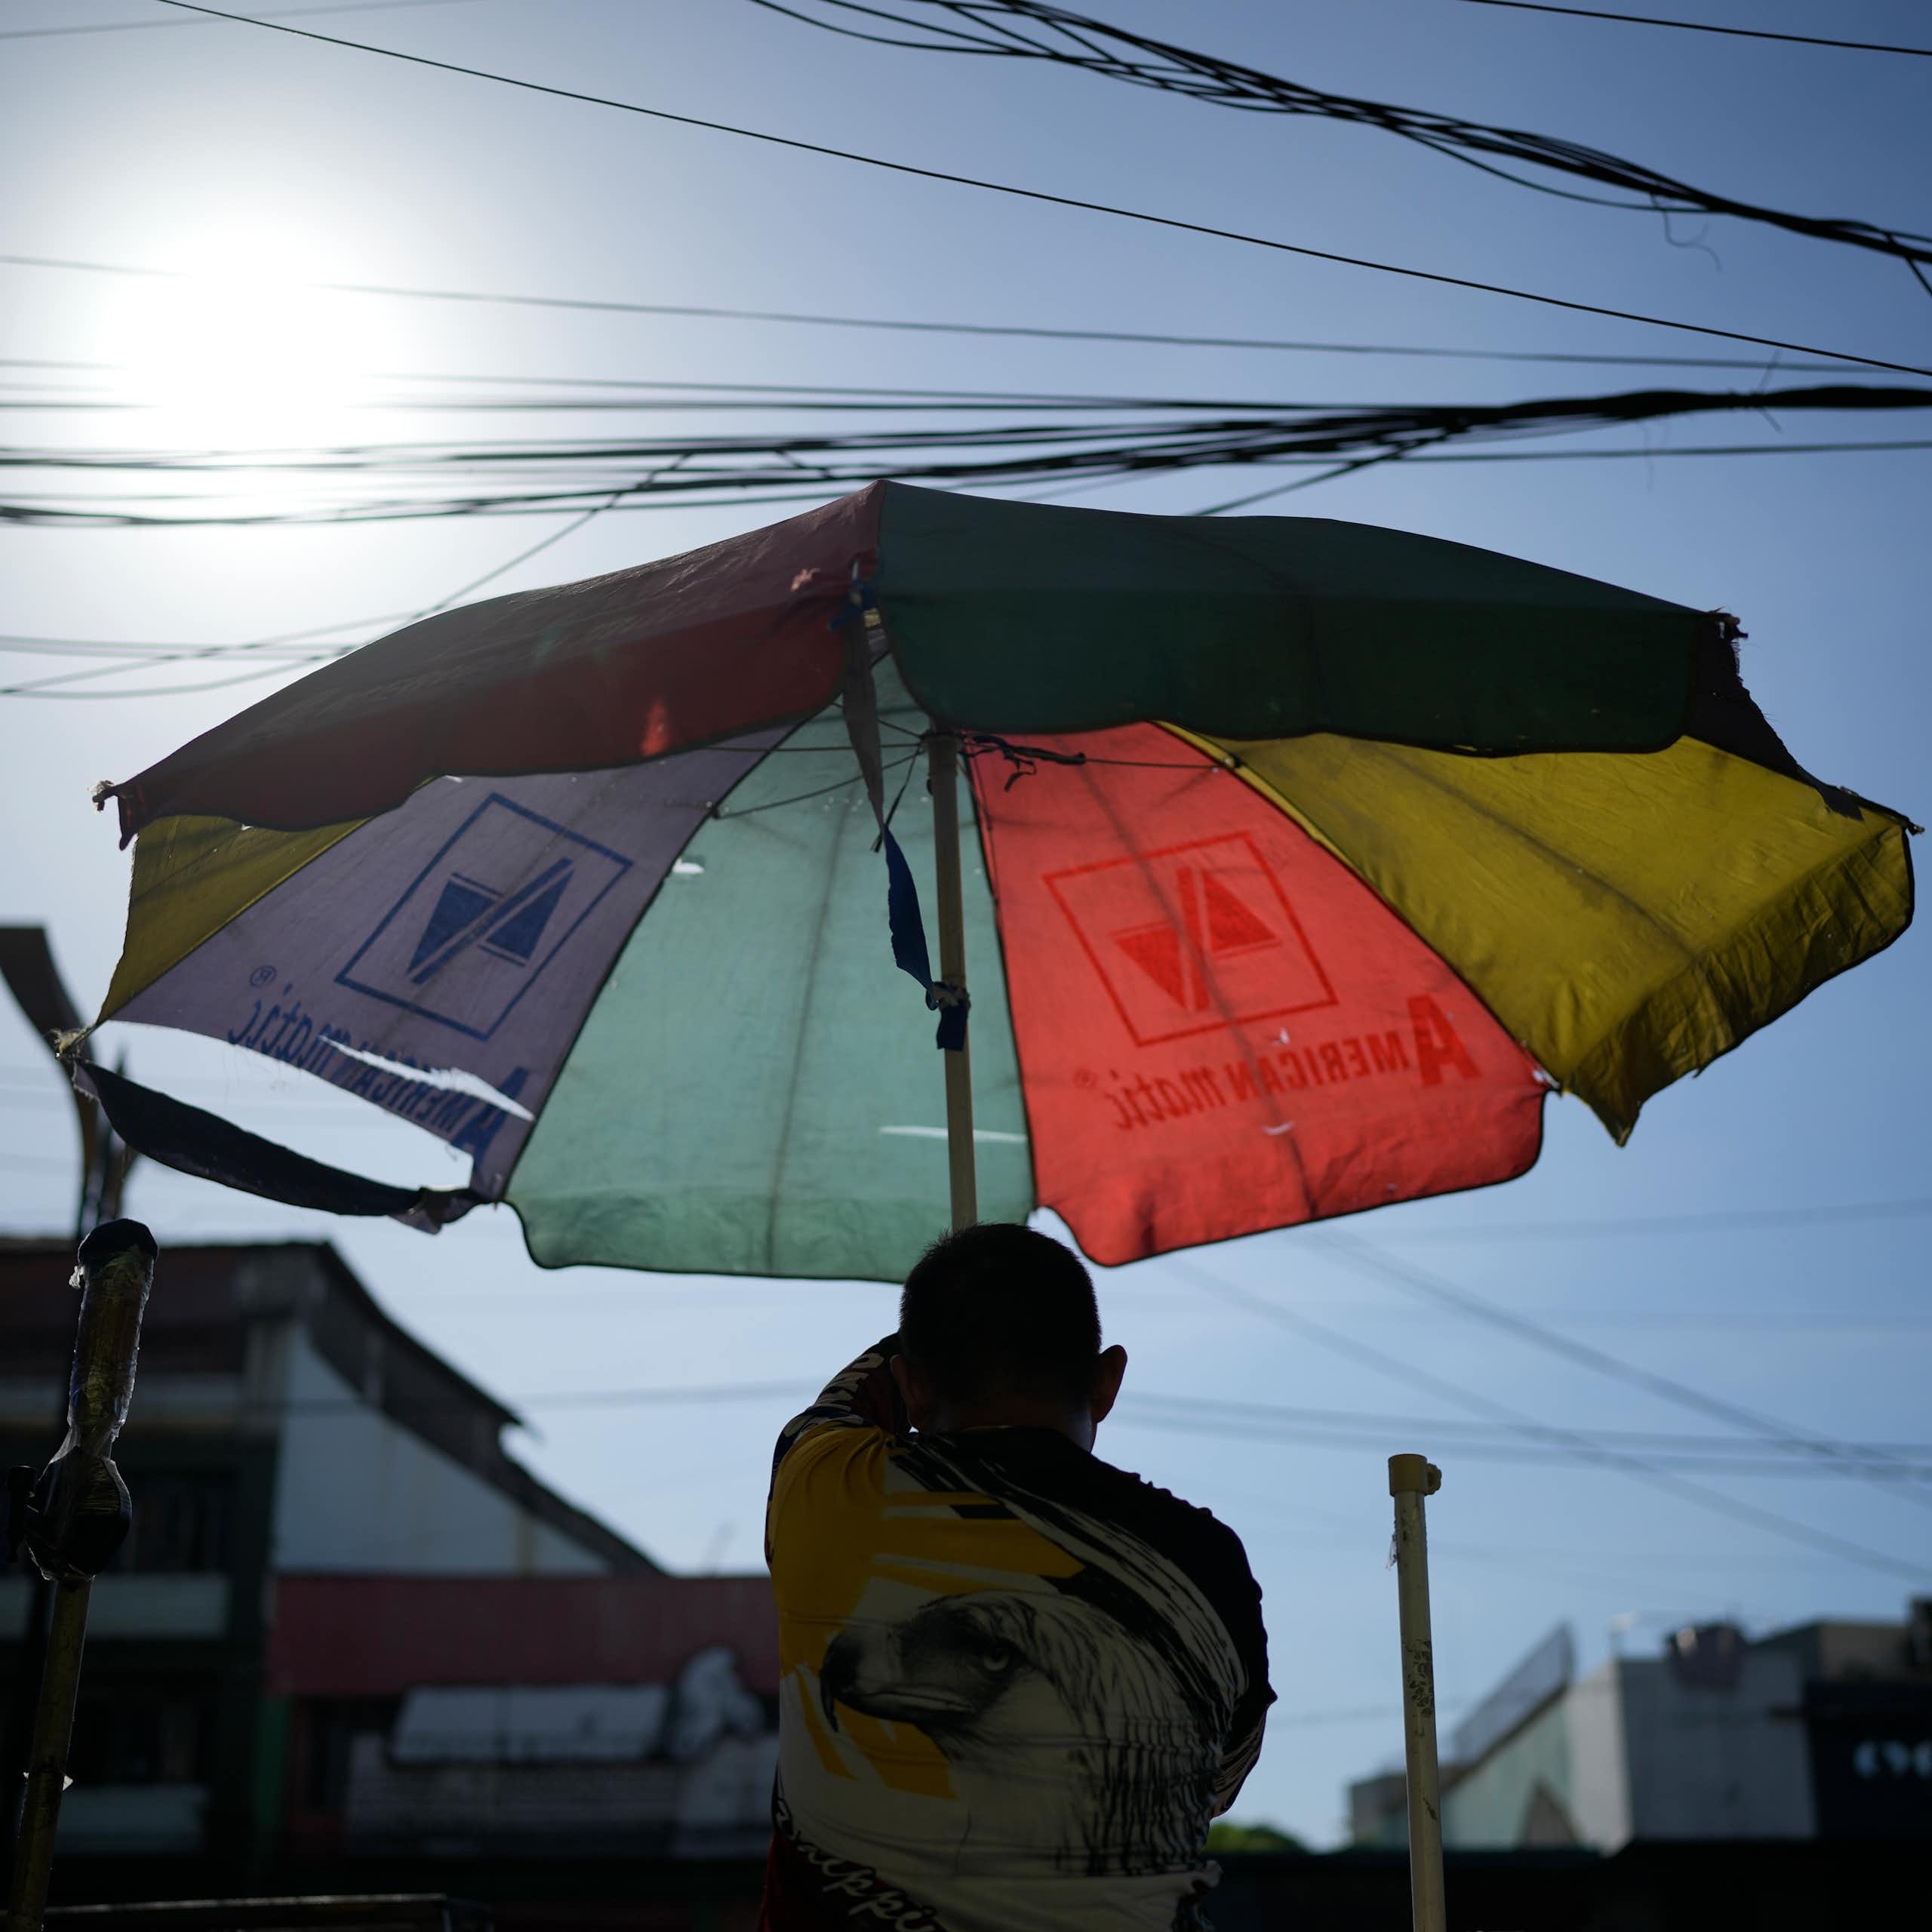 A man hoists an umbrella under a beating sun.